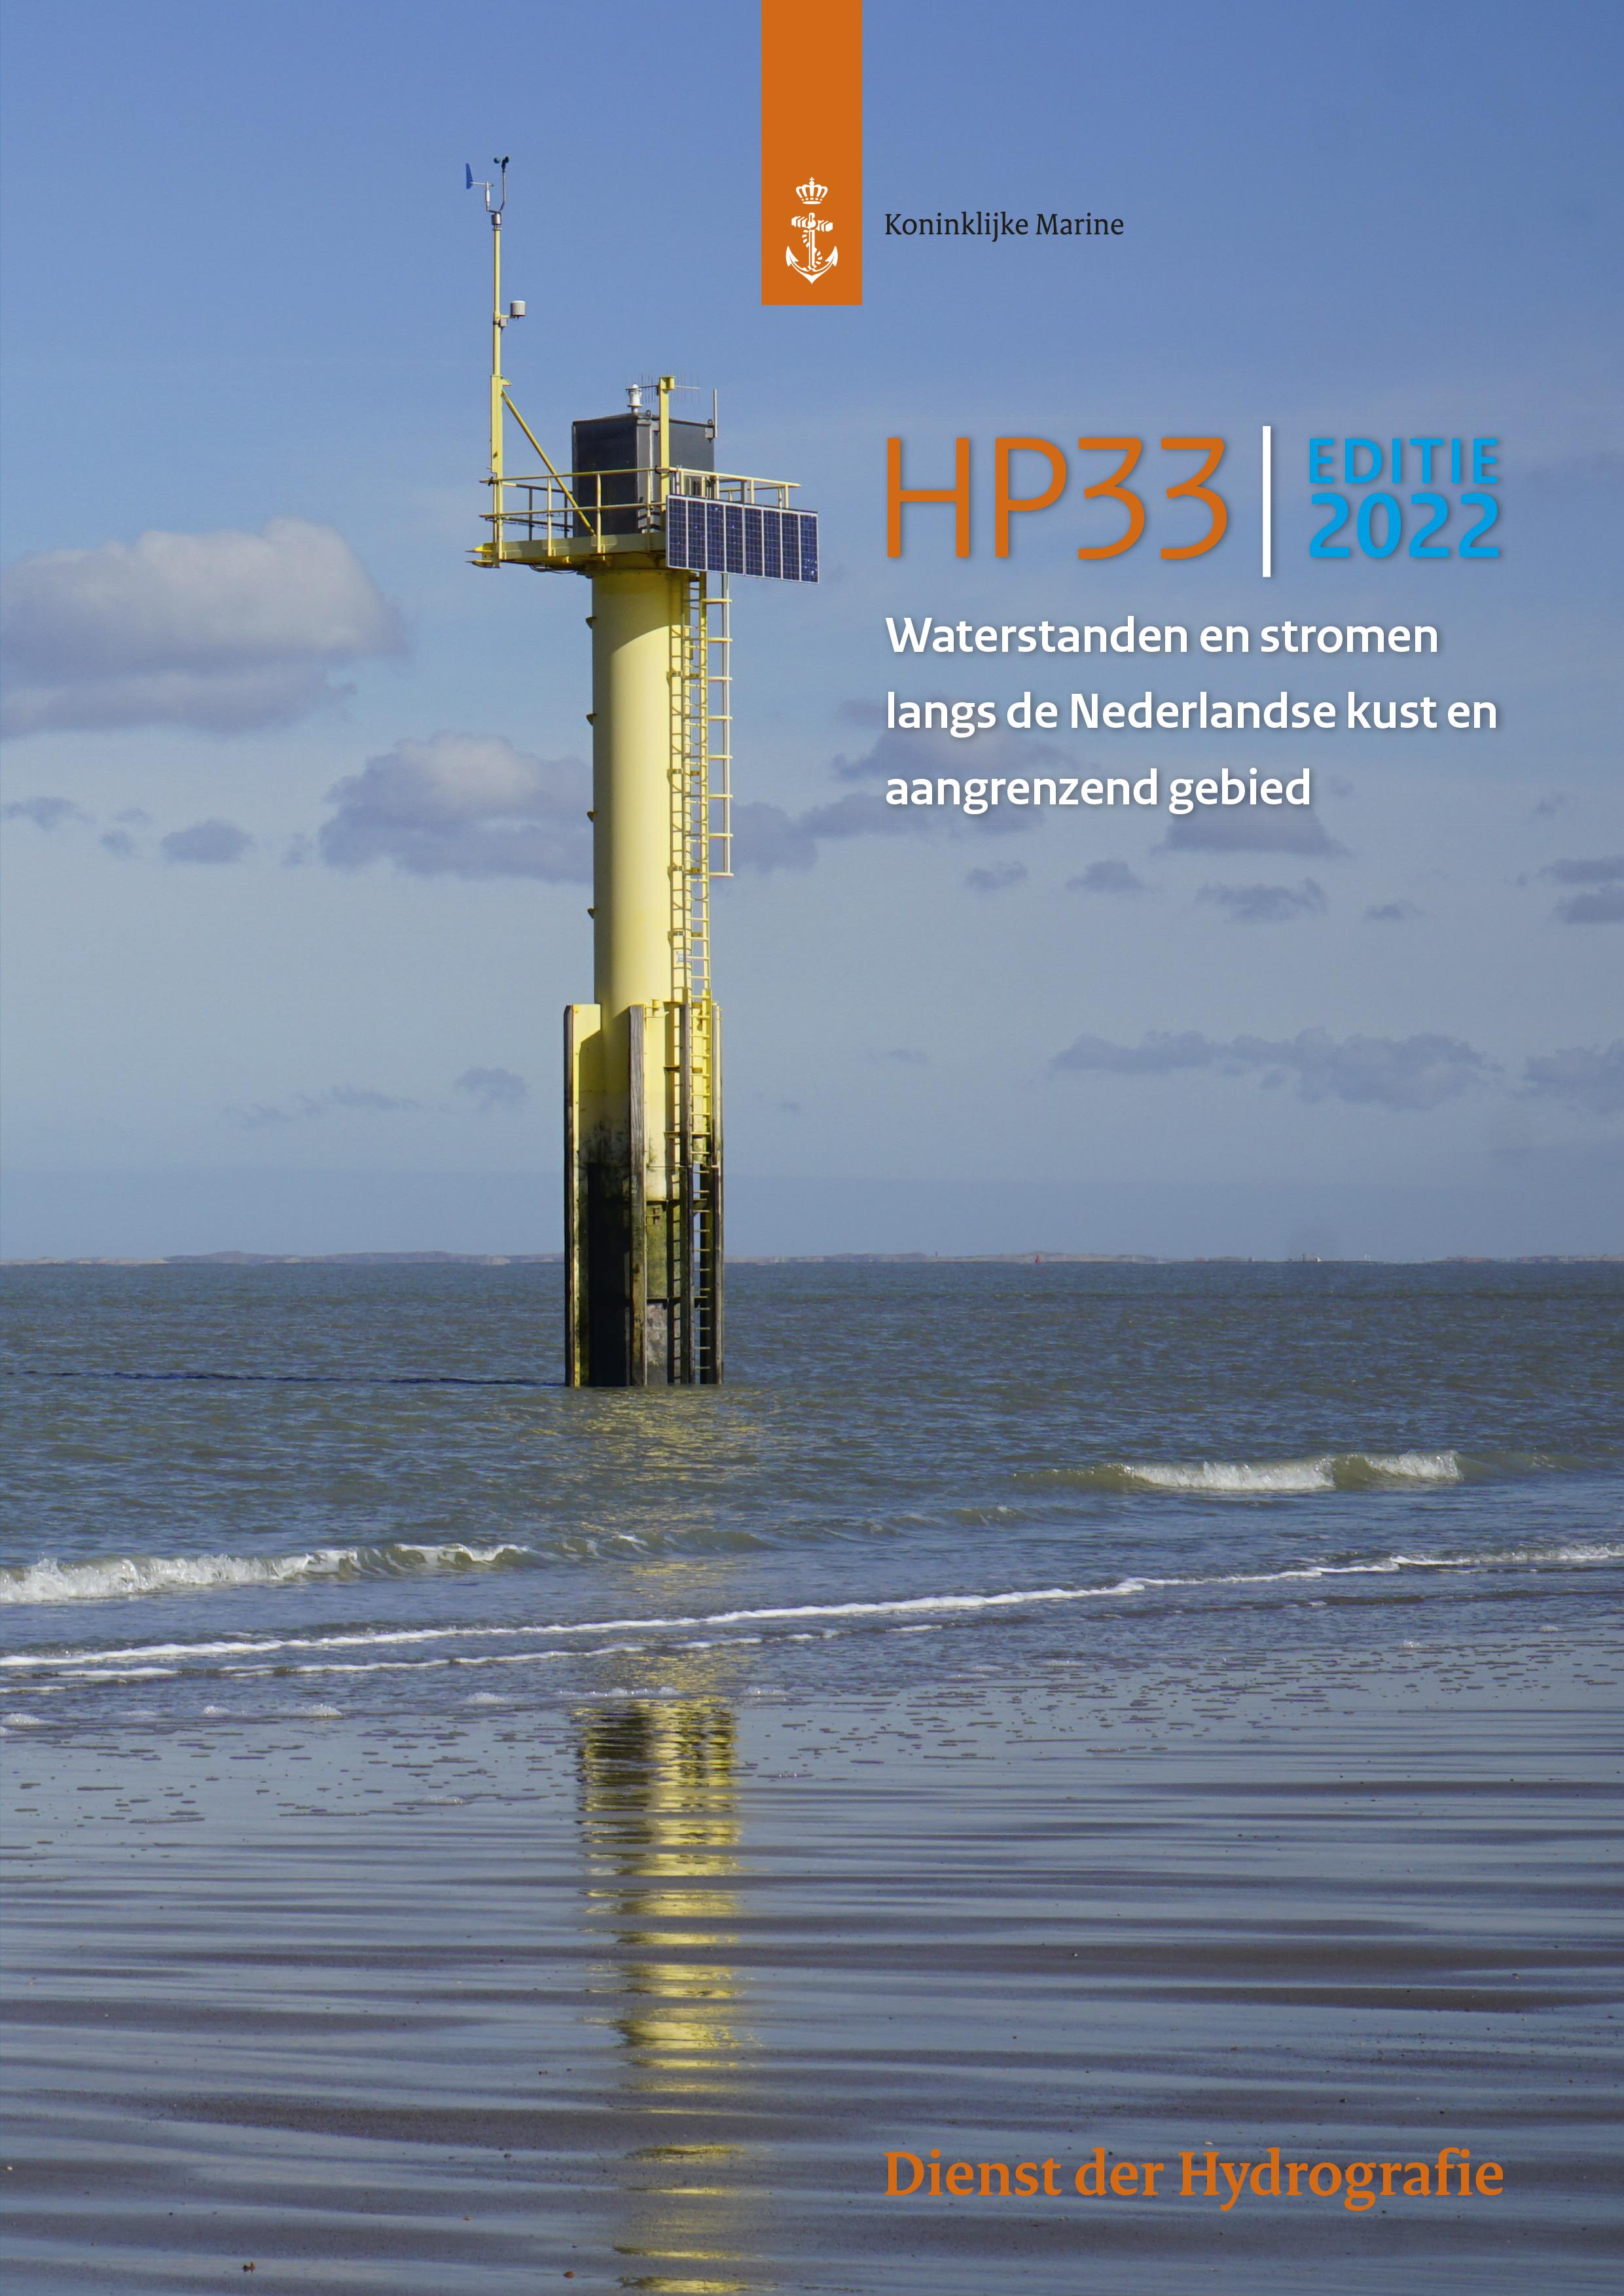 Waterstanden en Stromen 2022 (HP33)